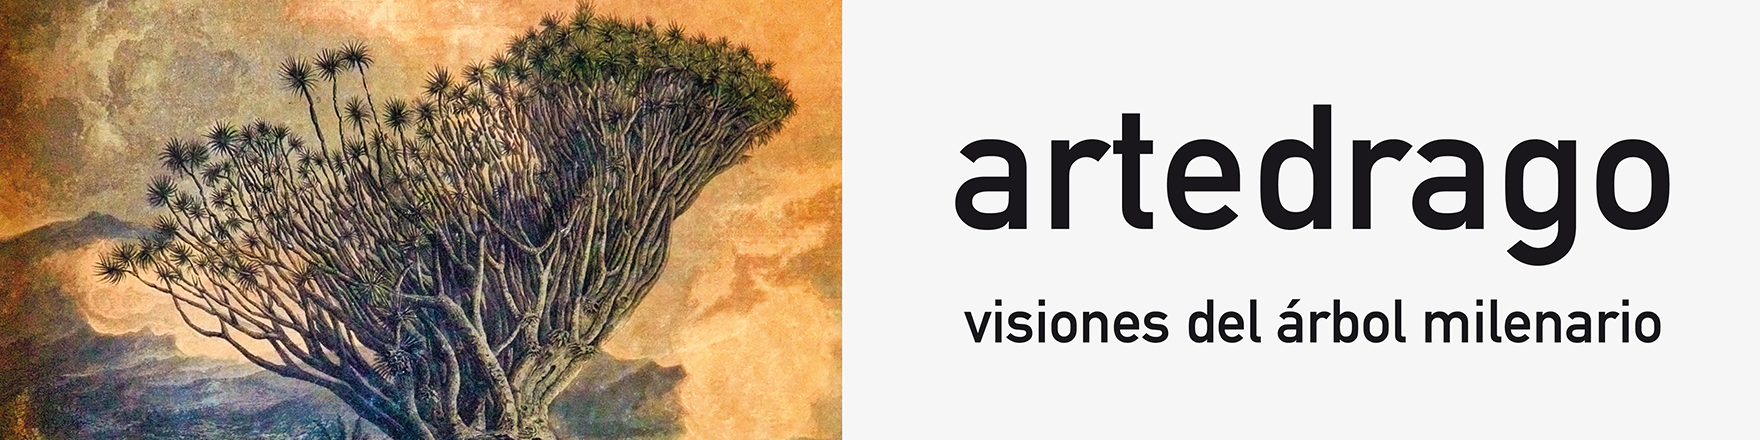 Artedrago. Visiones del árbol milenario